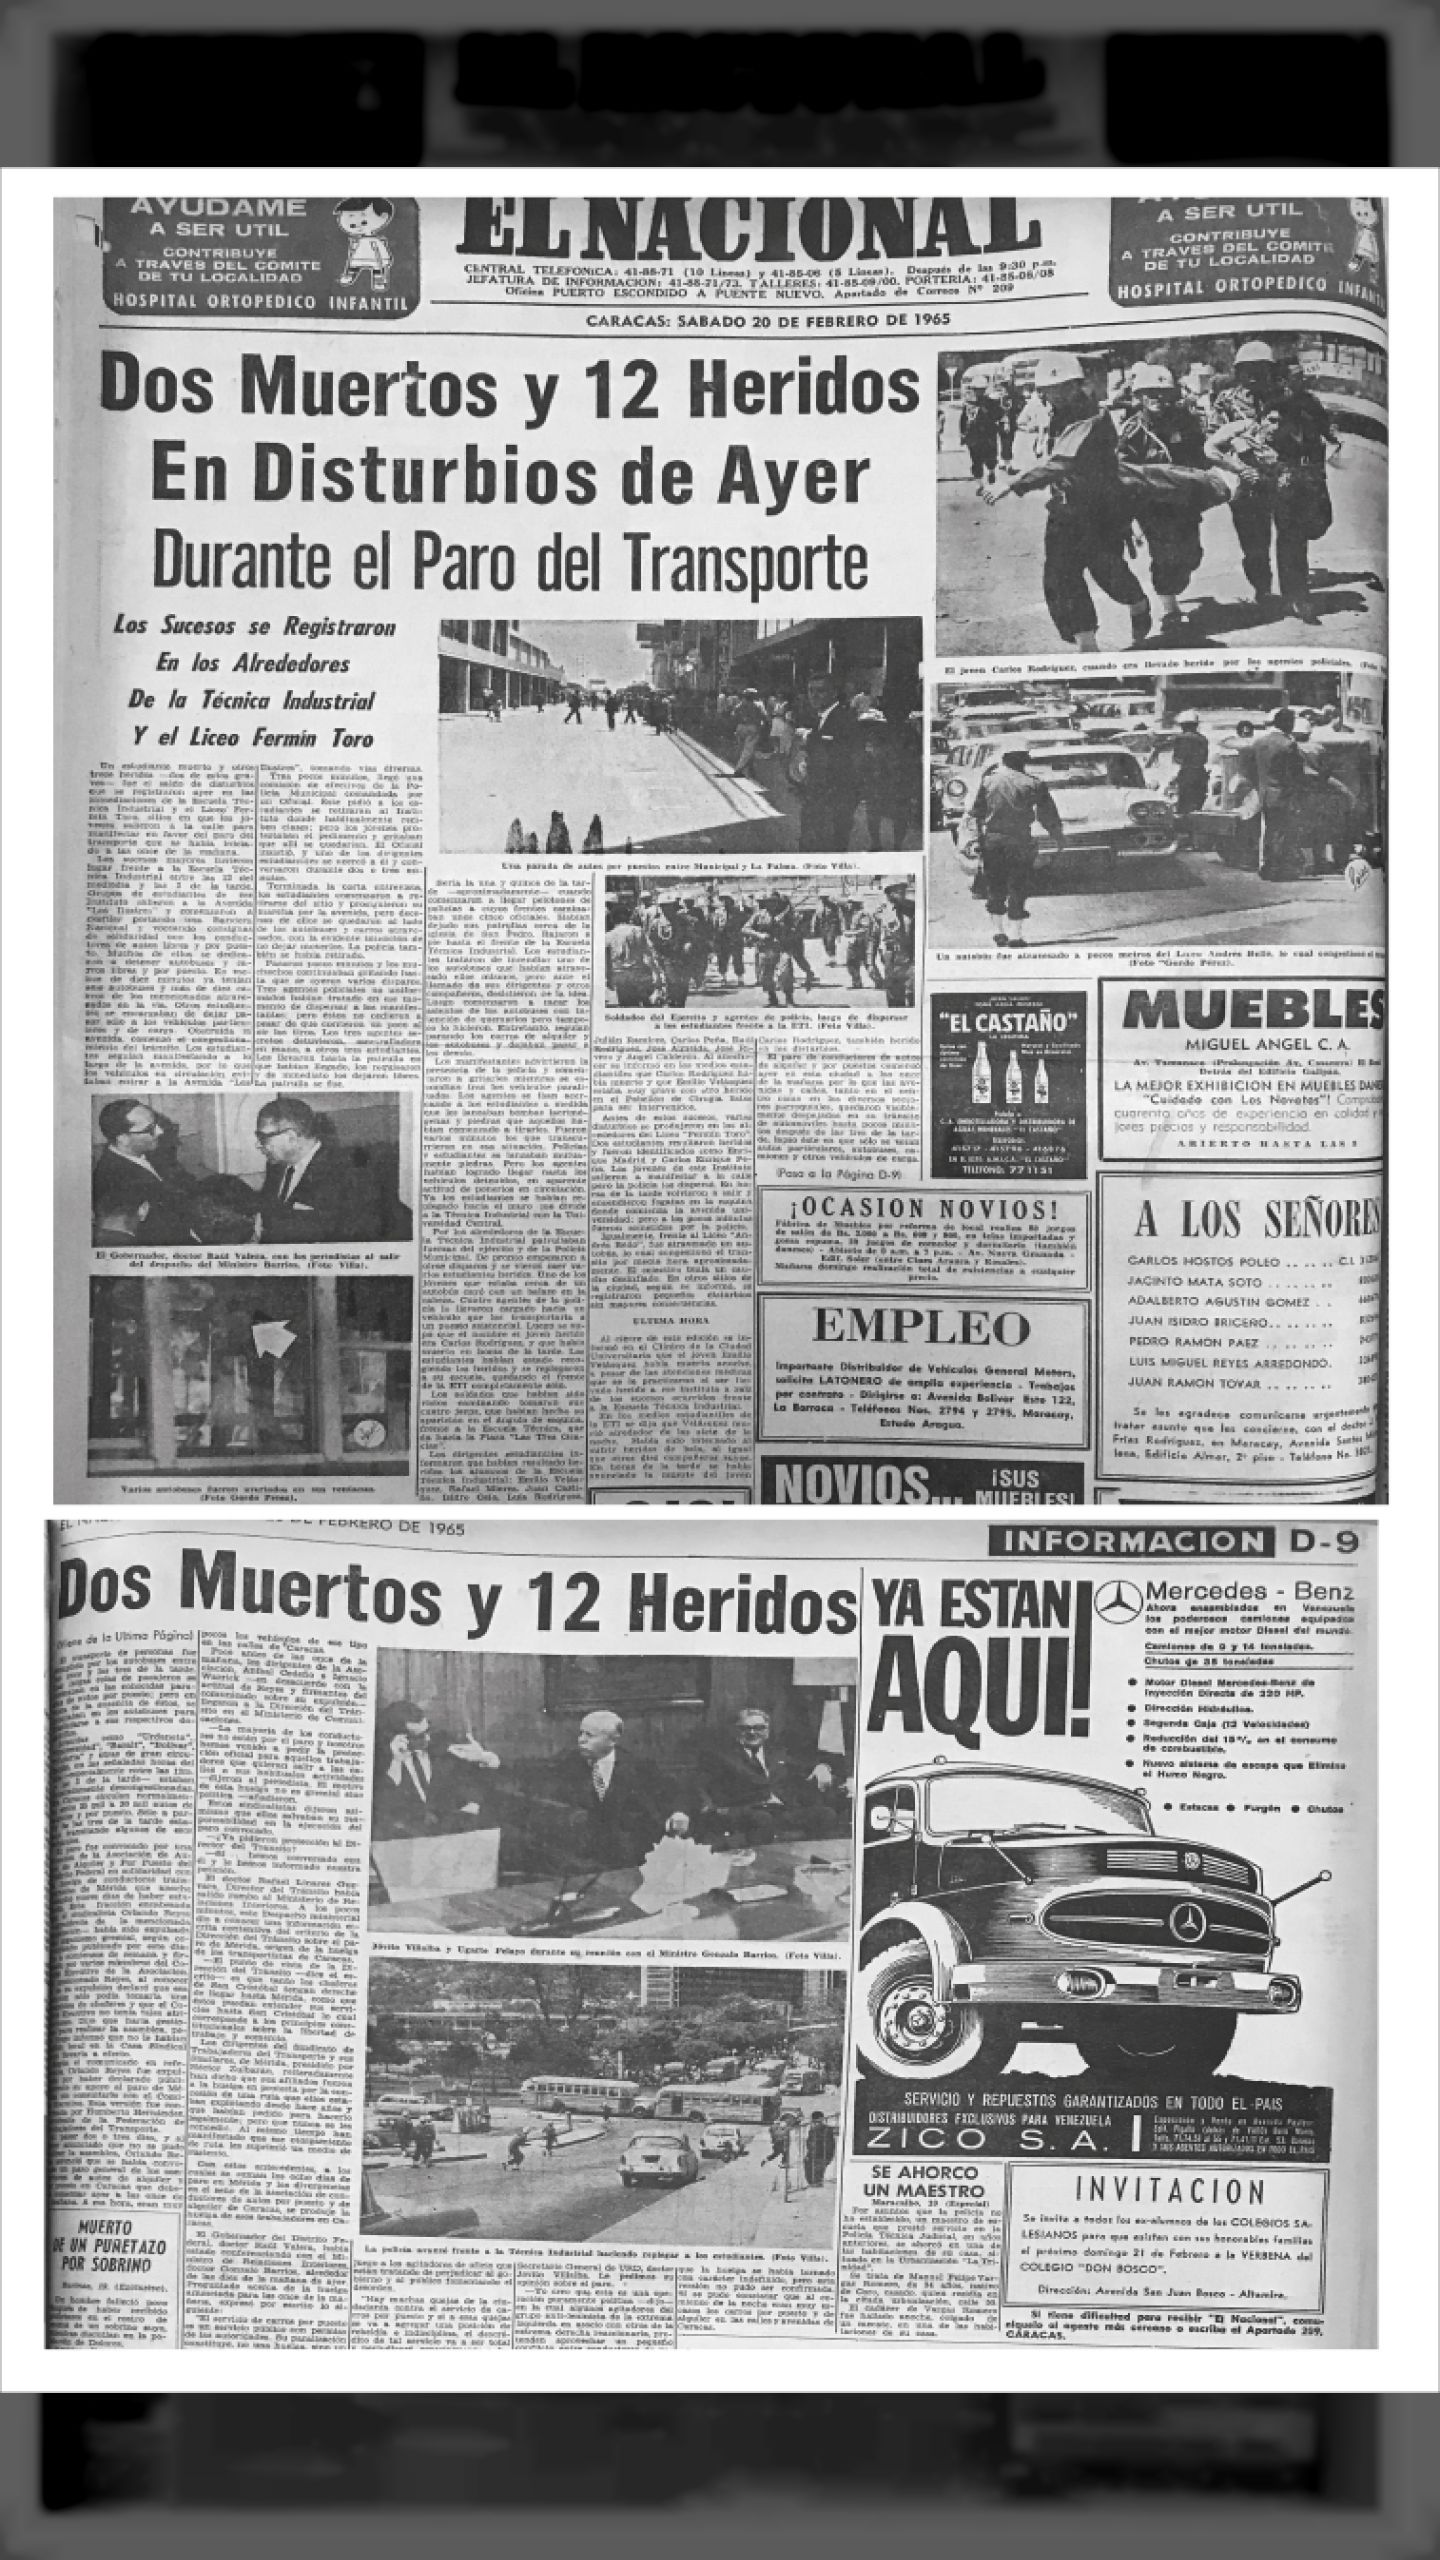 Dos Muertos y 12 Heridos en Disturbios de Ayer Durante Paro del Transporte (EL NACIONAL, 20 de febrero 1965)